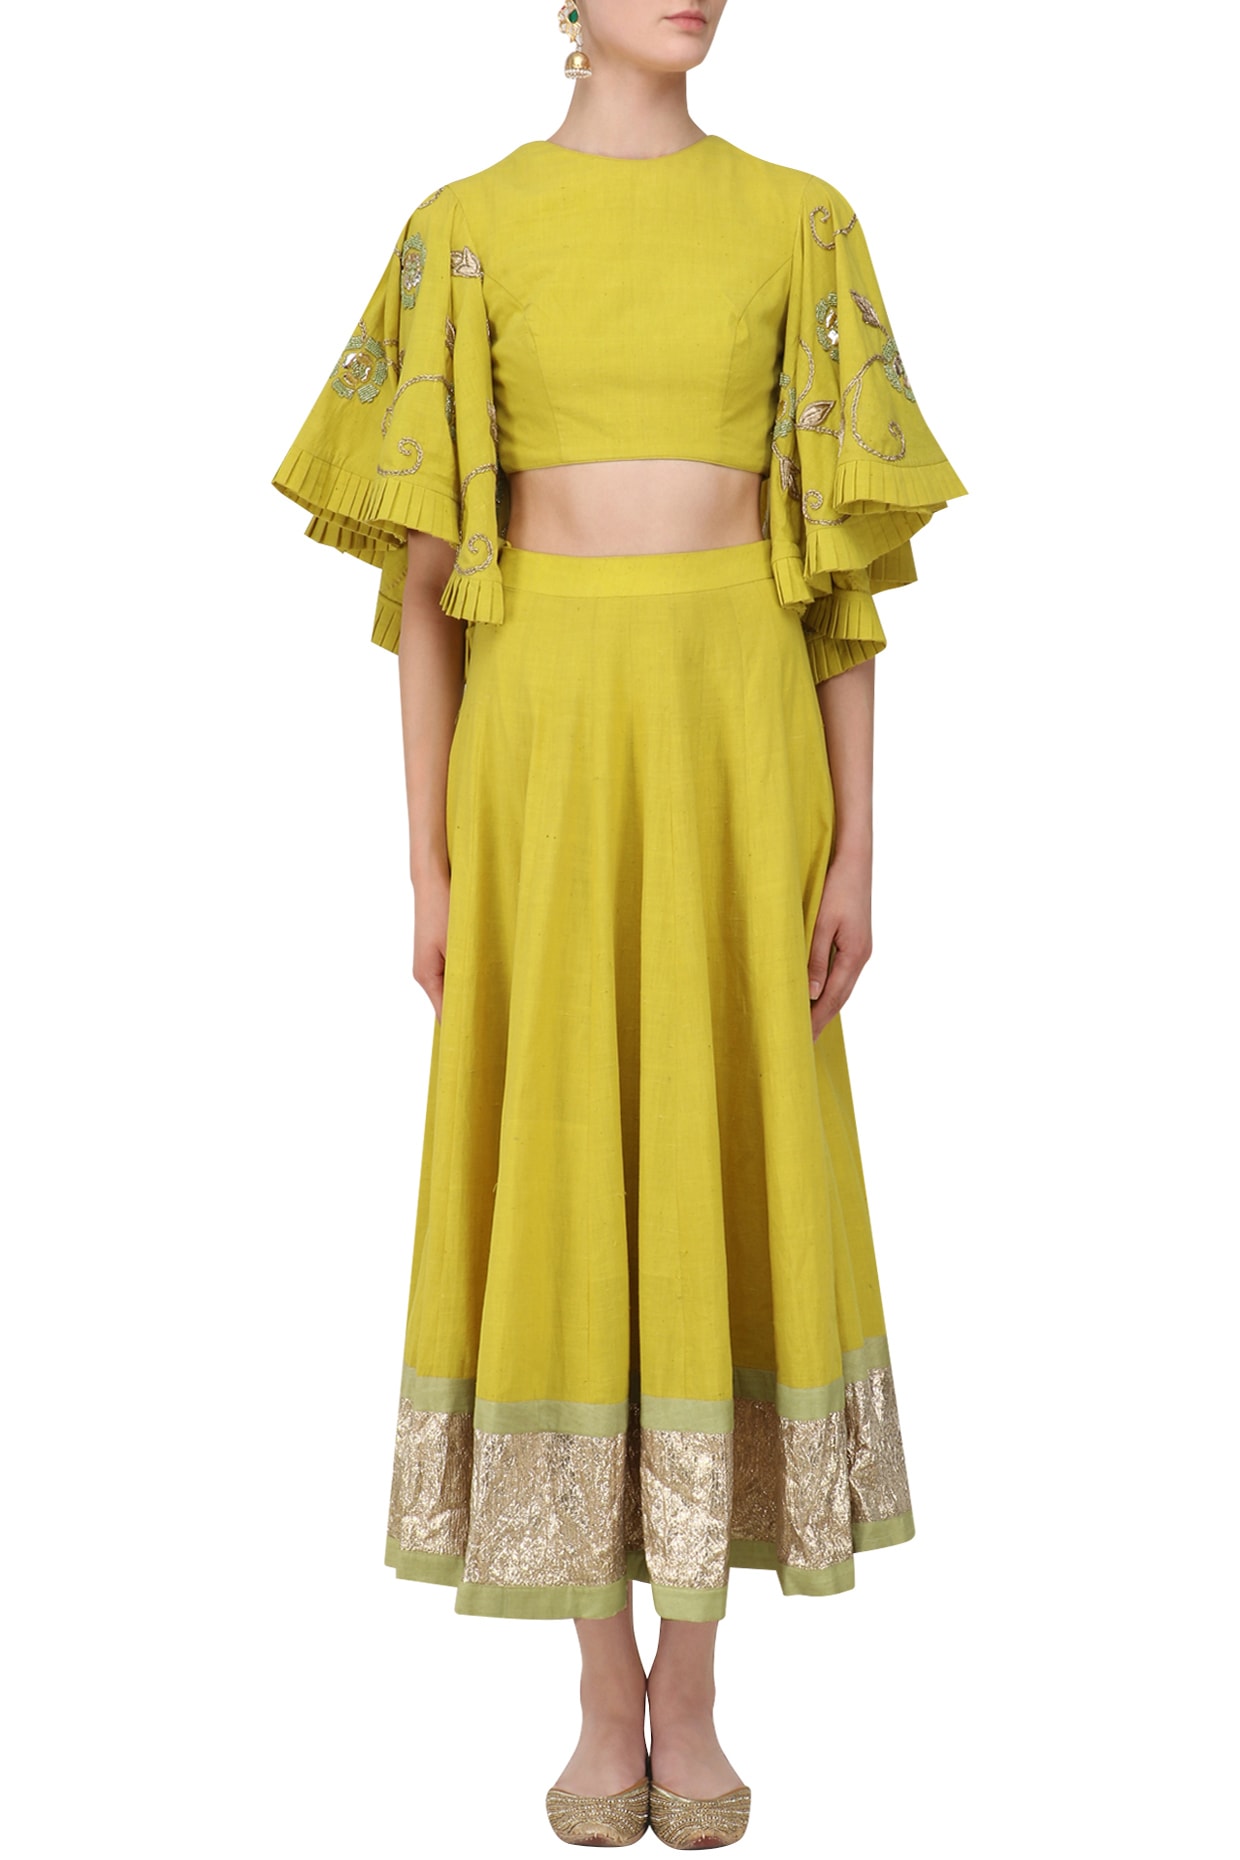 Pink Net Ankle Length Anarkali Suit 160226 | Designer anarkali, Anarkali  gown, Indian wedding dress